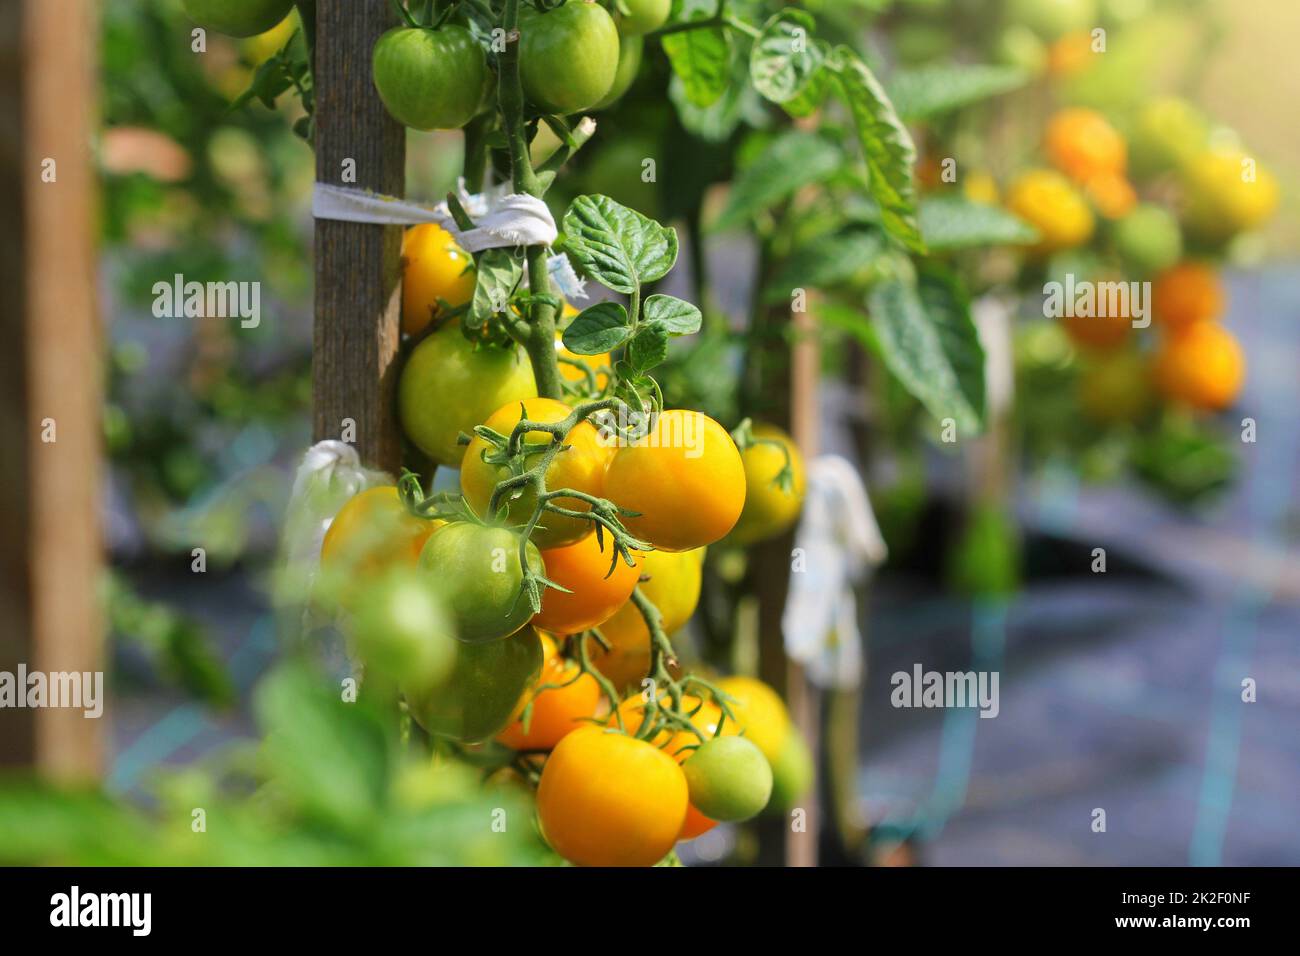 Gelbe Tomaten reifen auf einem Ast im Garten. Sorte gelbe Tomaten Stockfoto